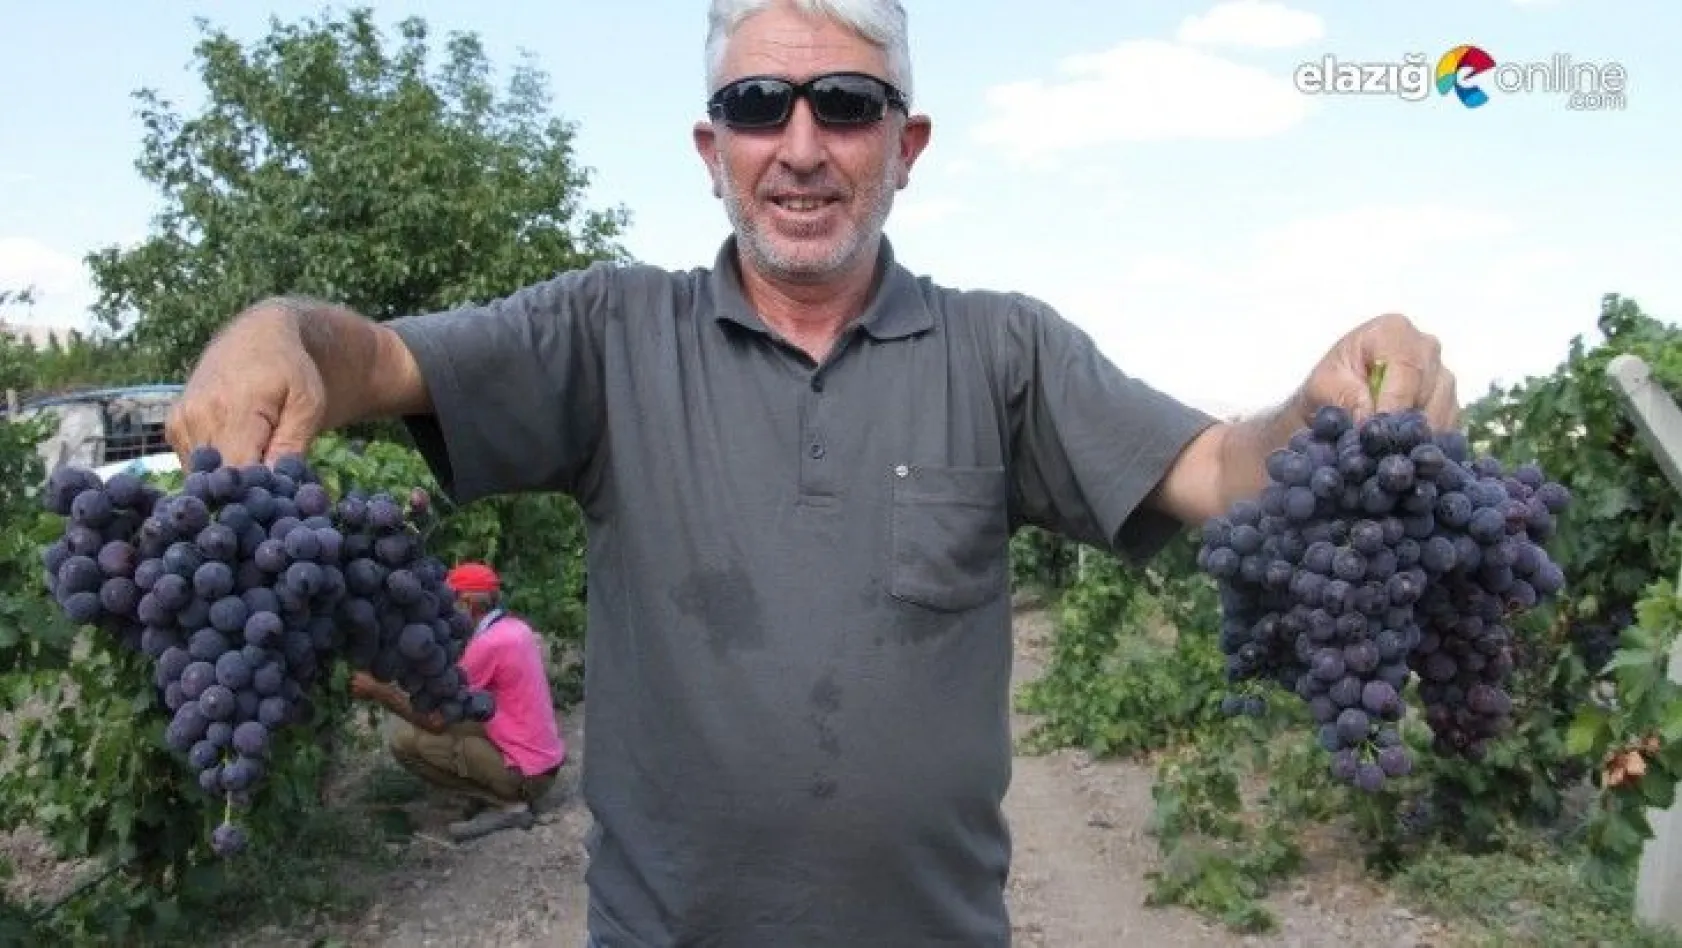 Elazığ'ın üzüm köyünde erkenci üzüm hasadı başladı